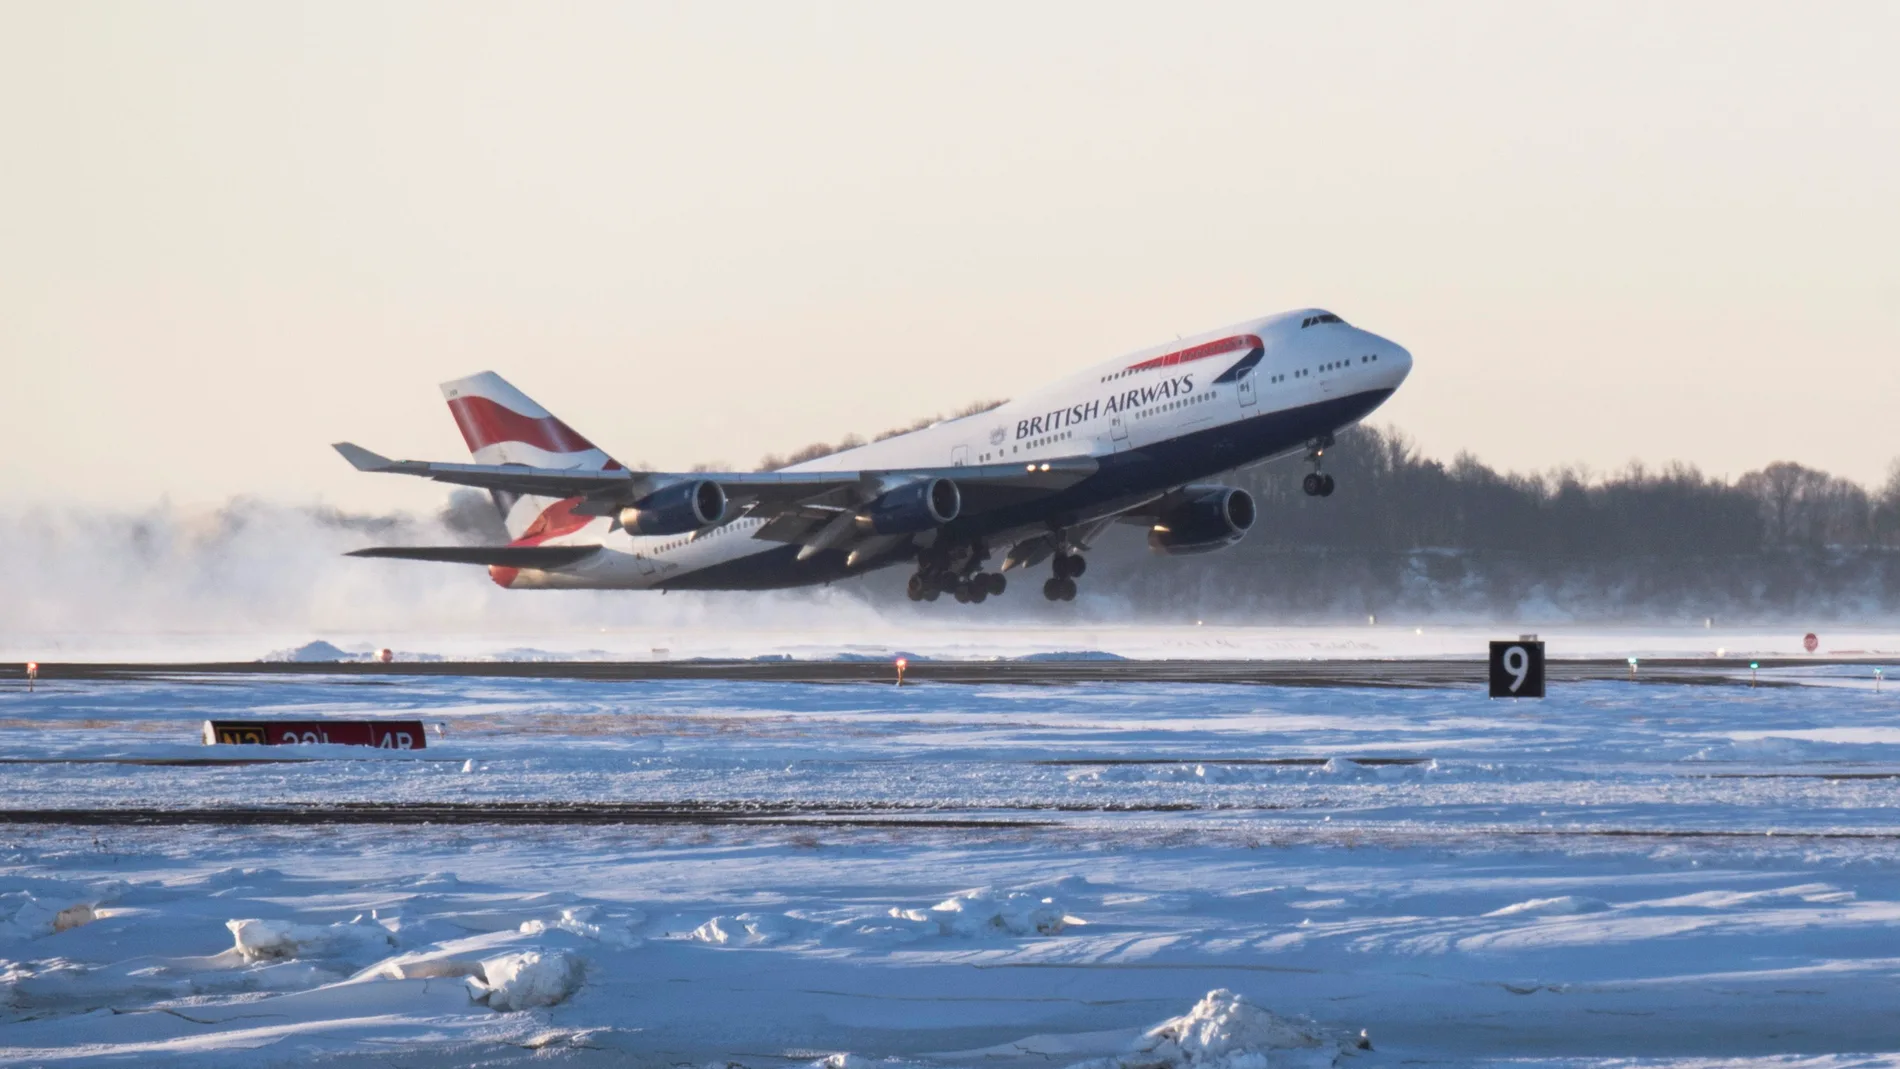 British Airways confirms retiring its Boeing 747 fleet